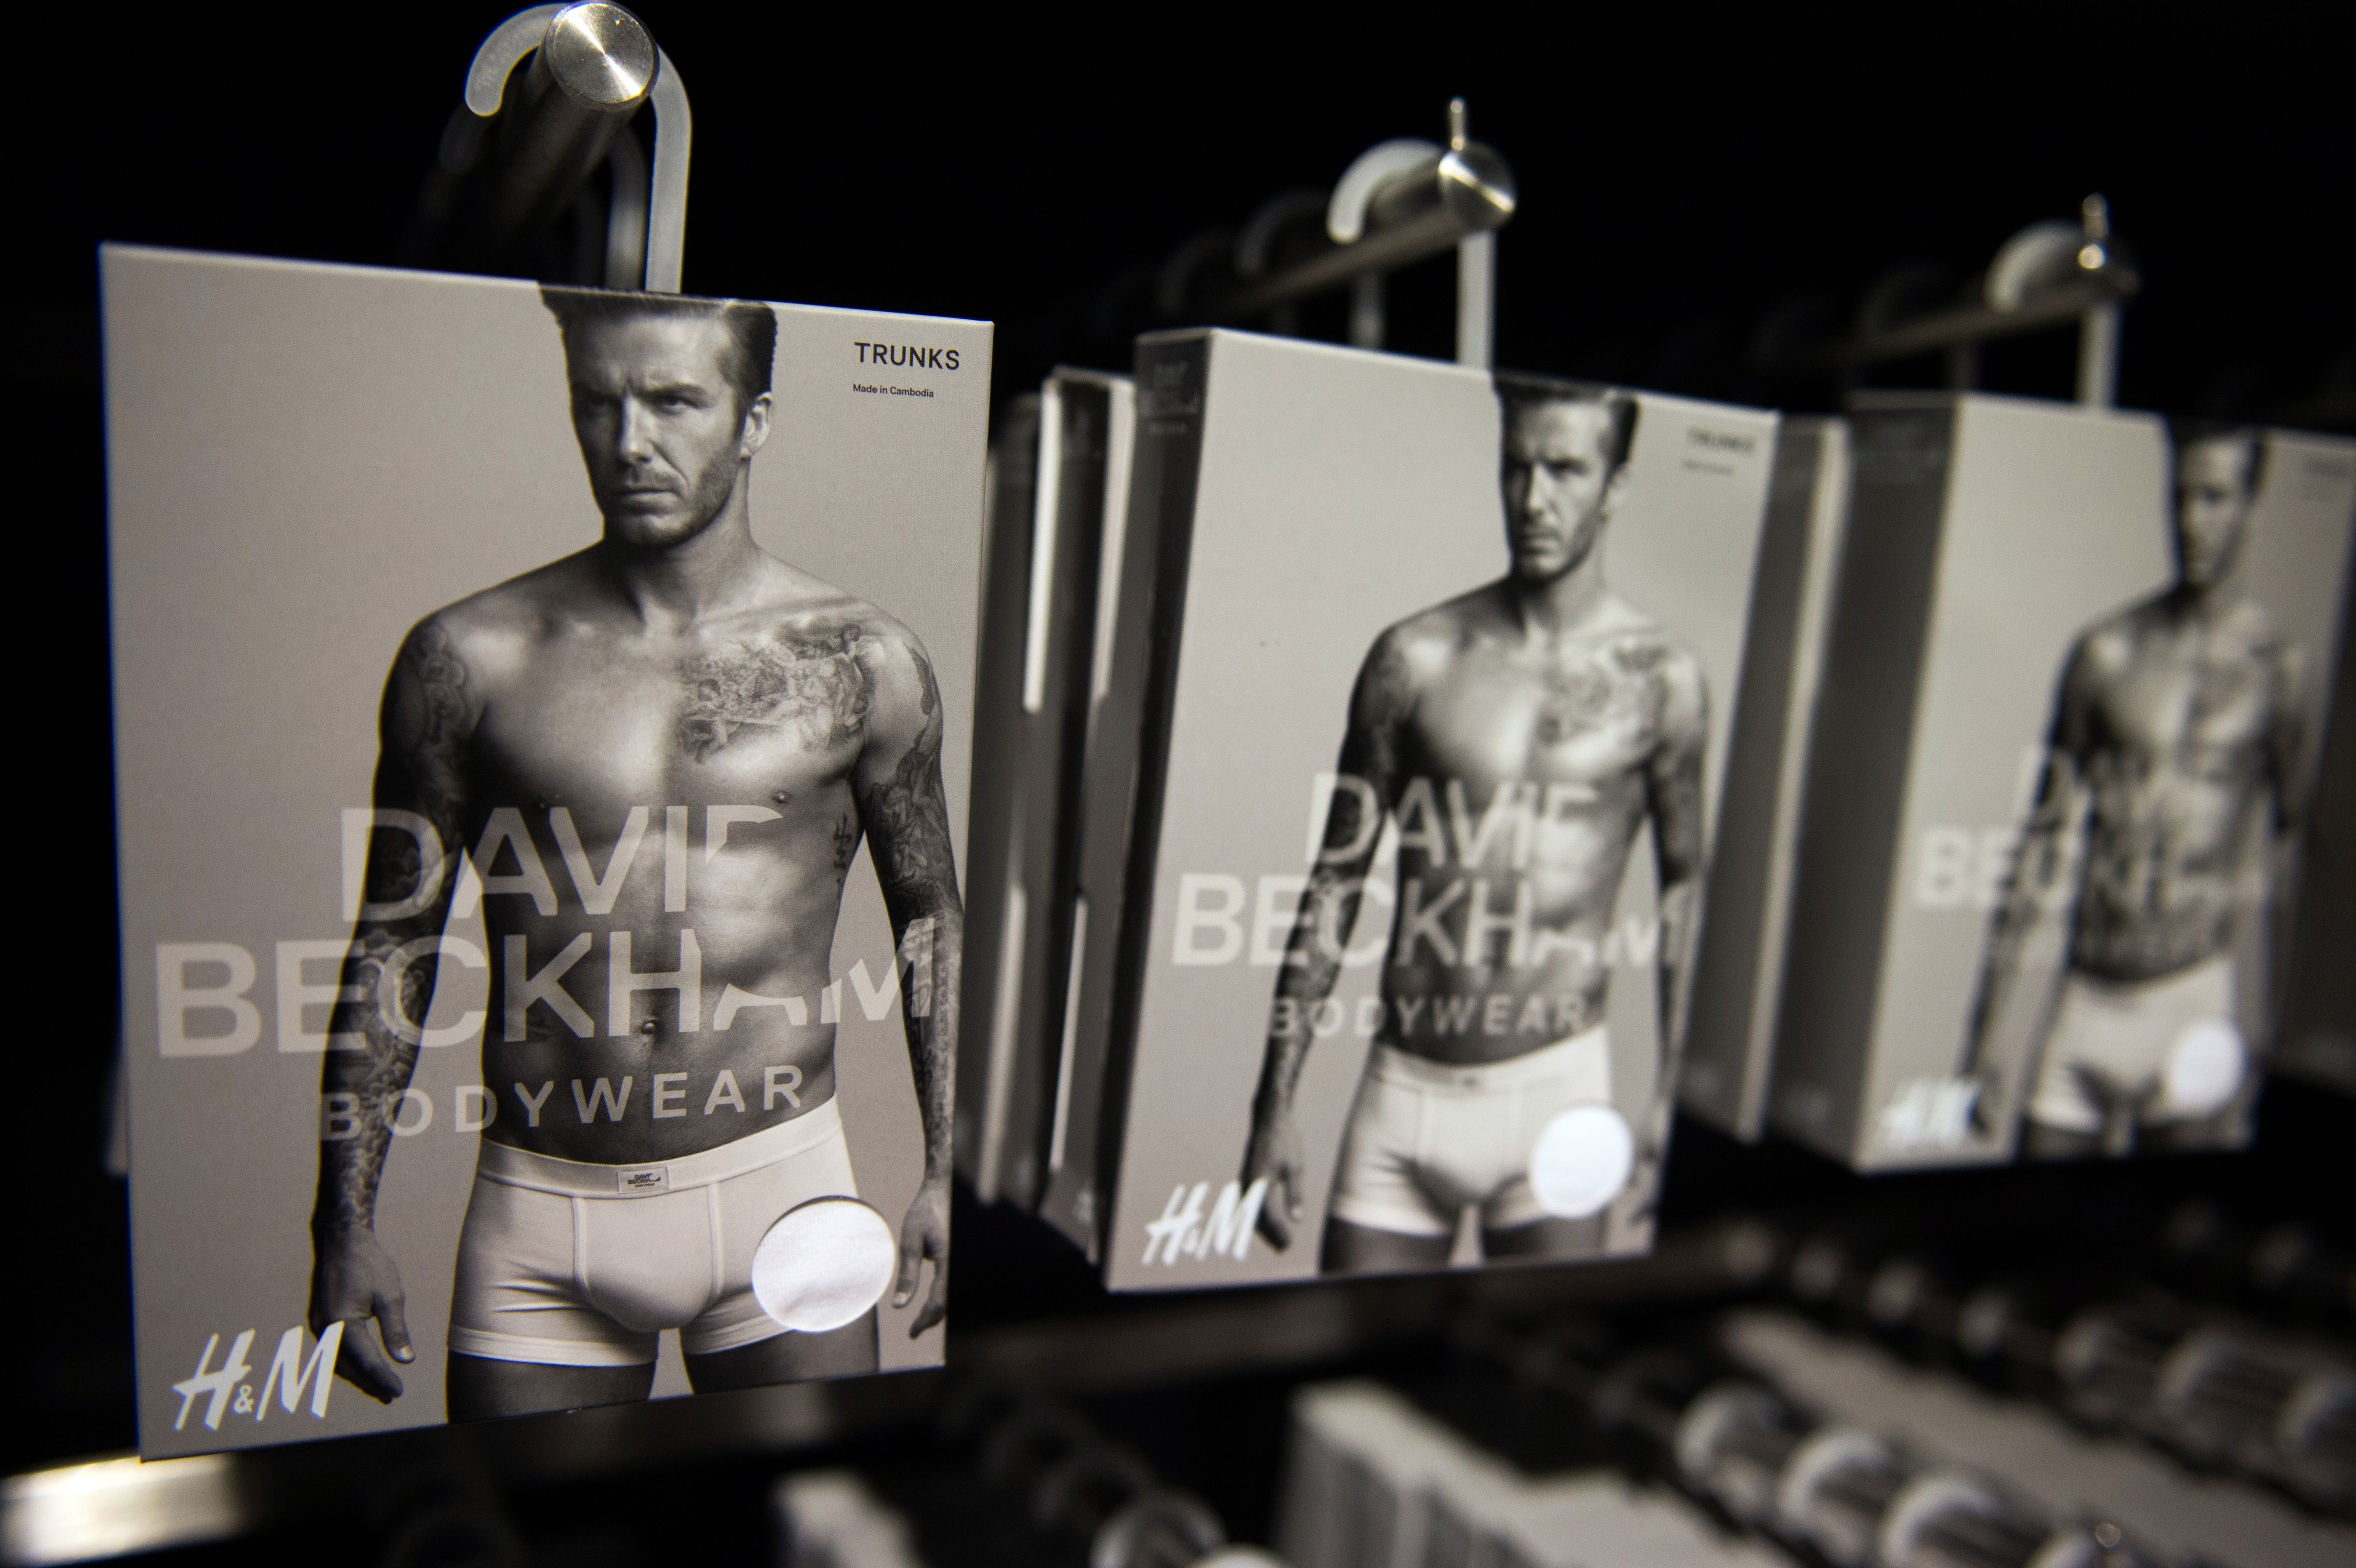 La enorme fortuna que David Beckham ha hecho al vender ropa interior - La  Raza